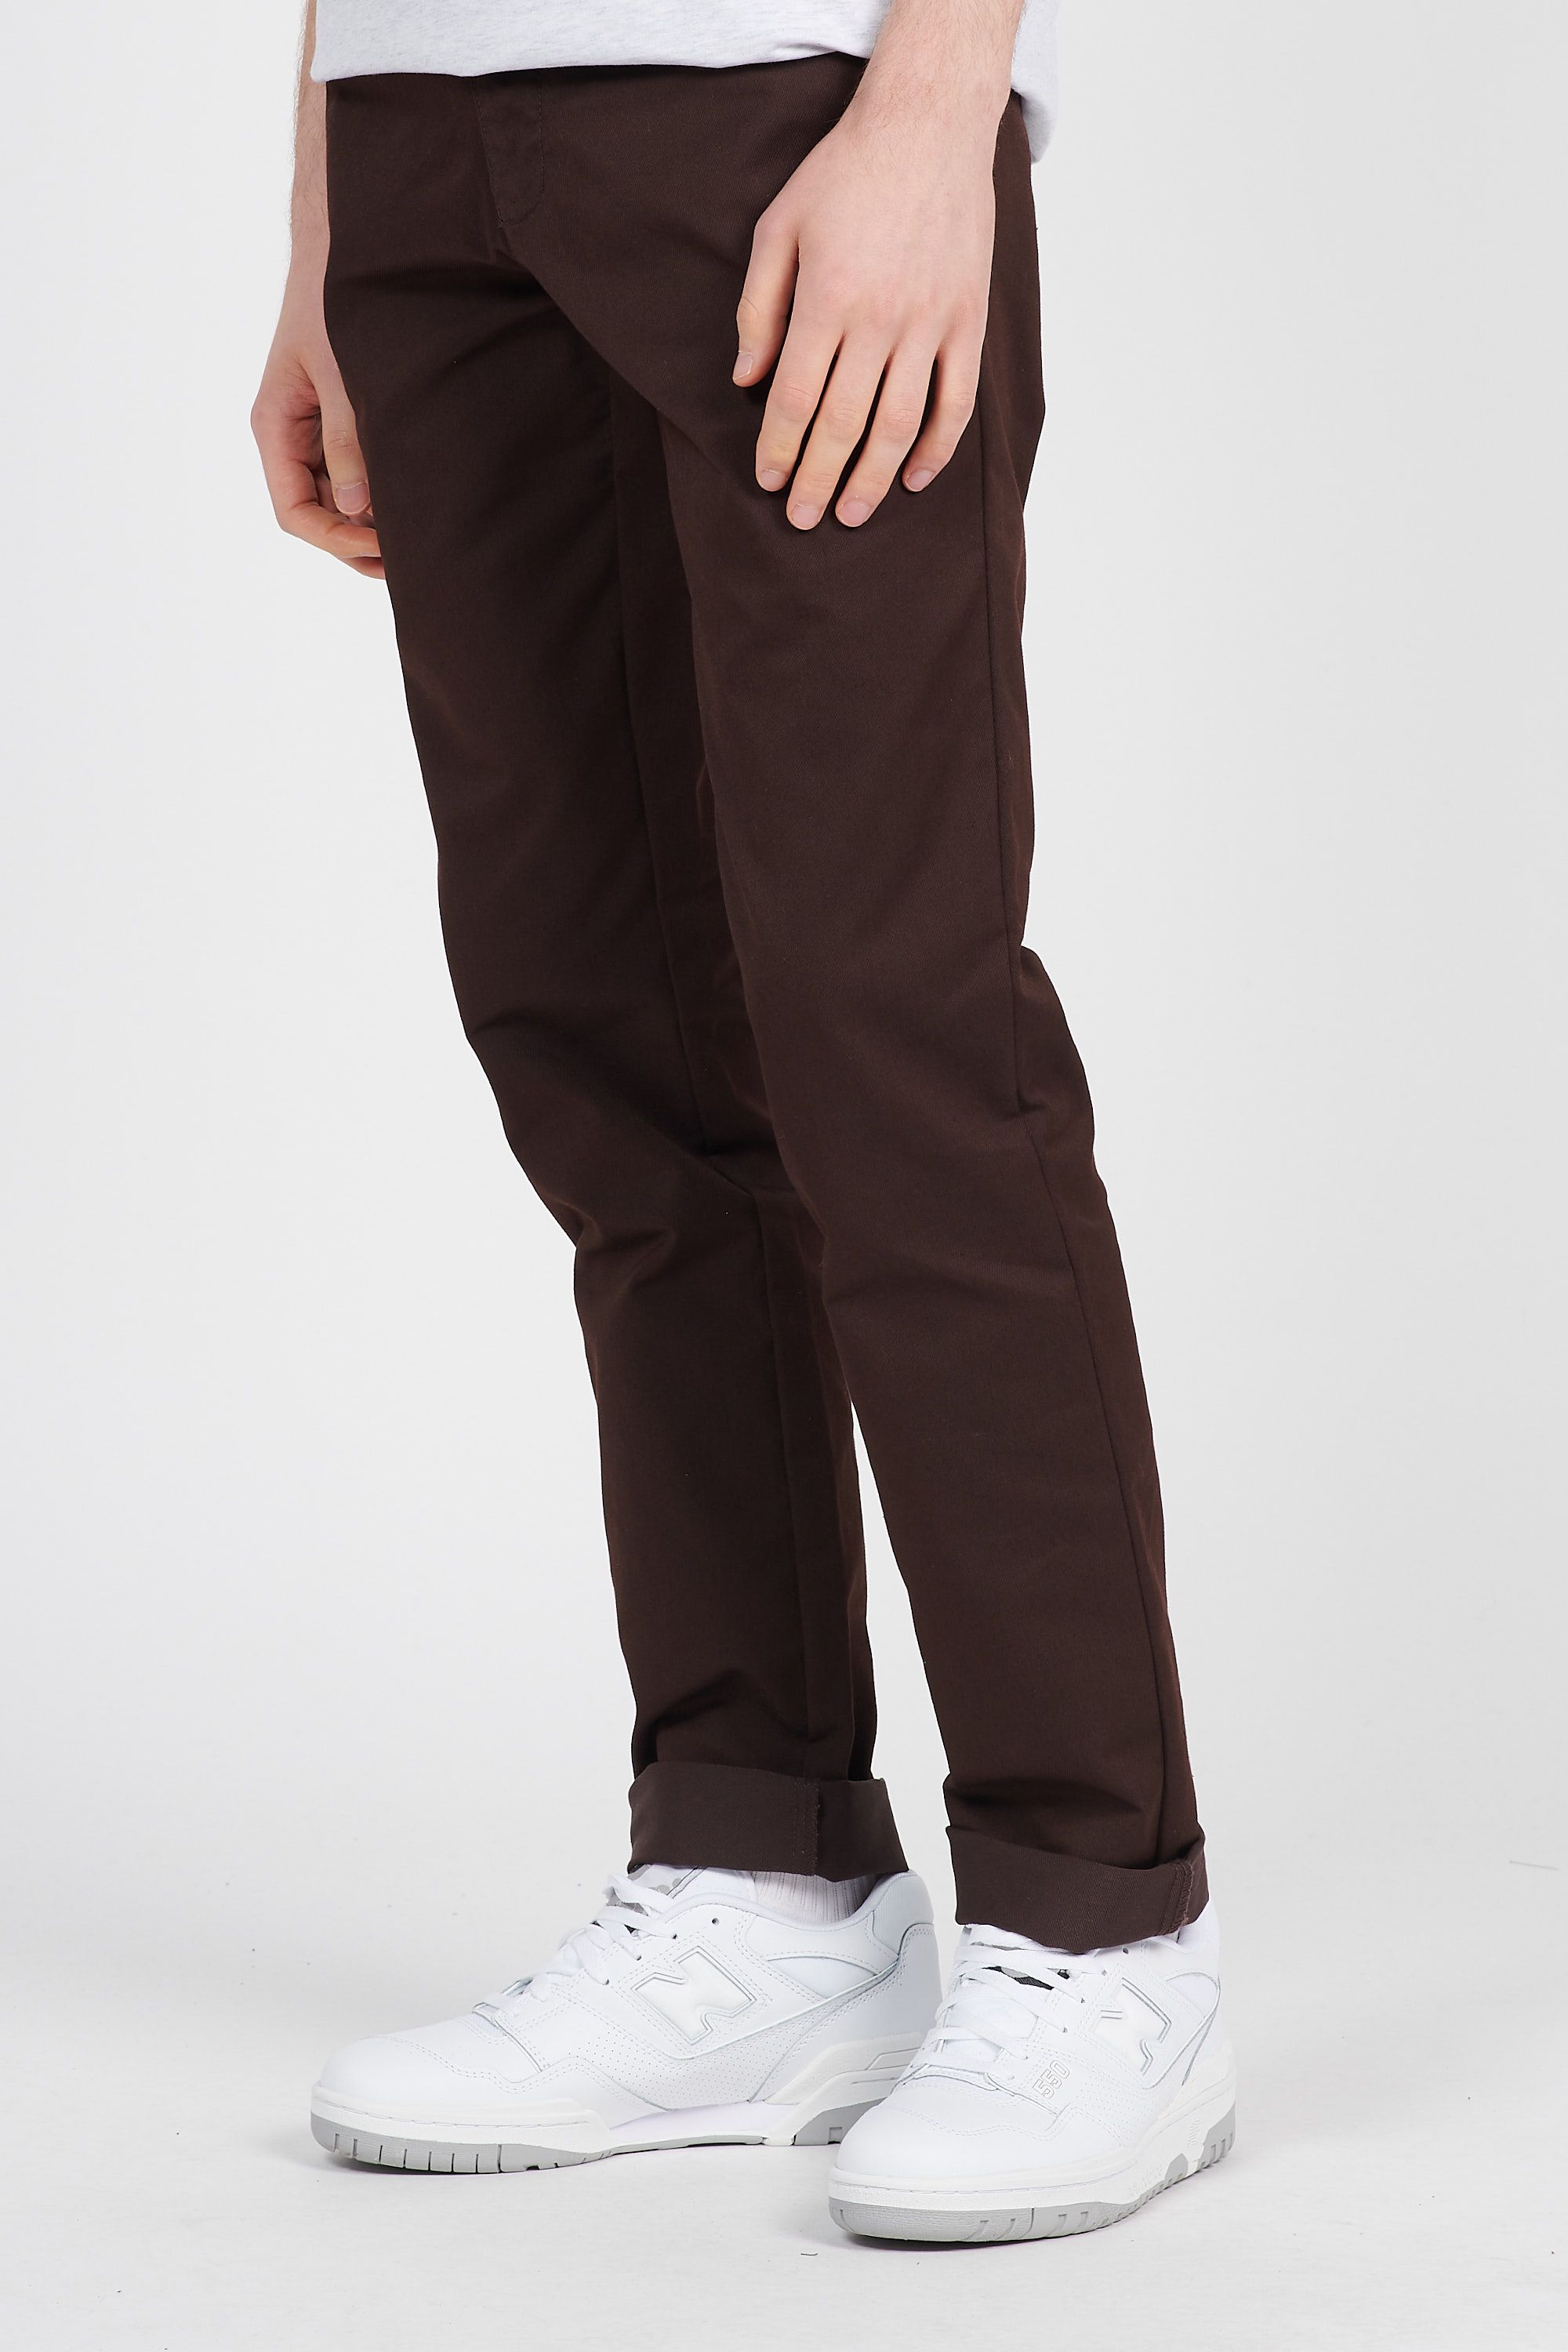 élégants et chinos Pantalons casual Pantalon Carhartt WIP pour homme en coloris Marron Homme Vêtements Pantalons décontractés 